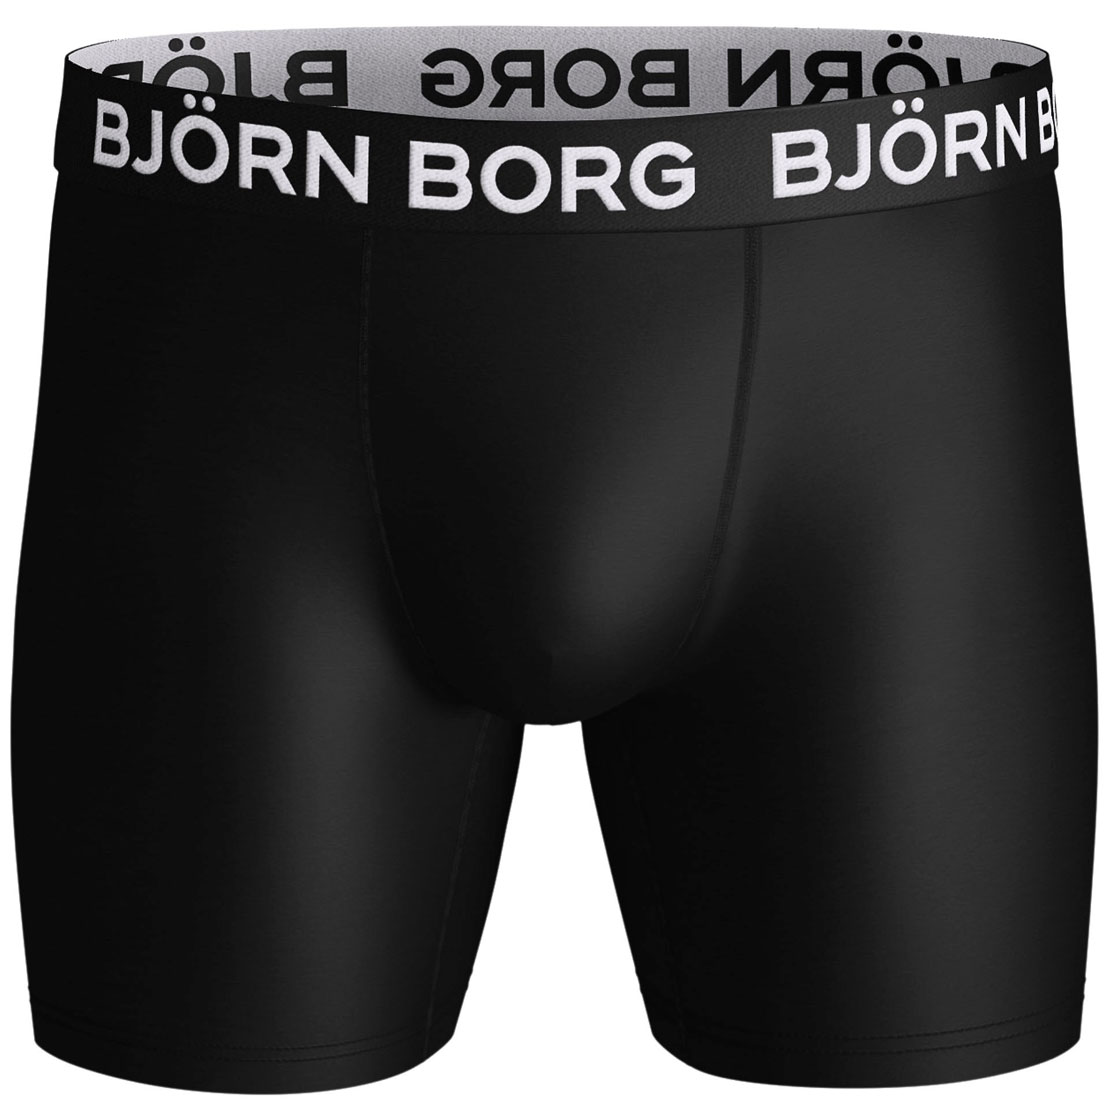 10001729-mp001-Bjorn-Borg-voor